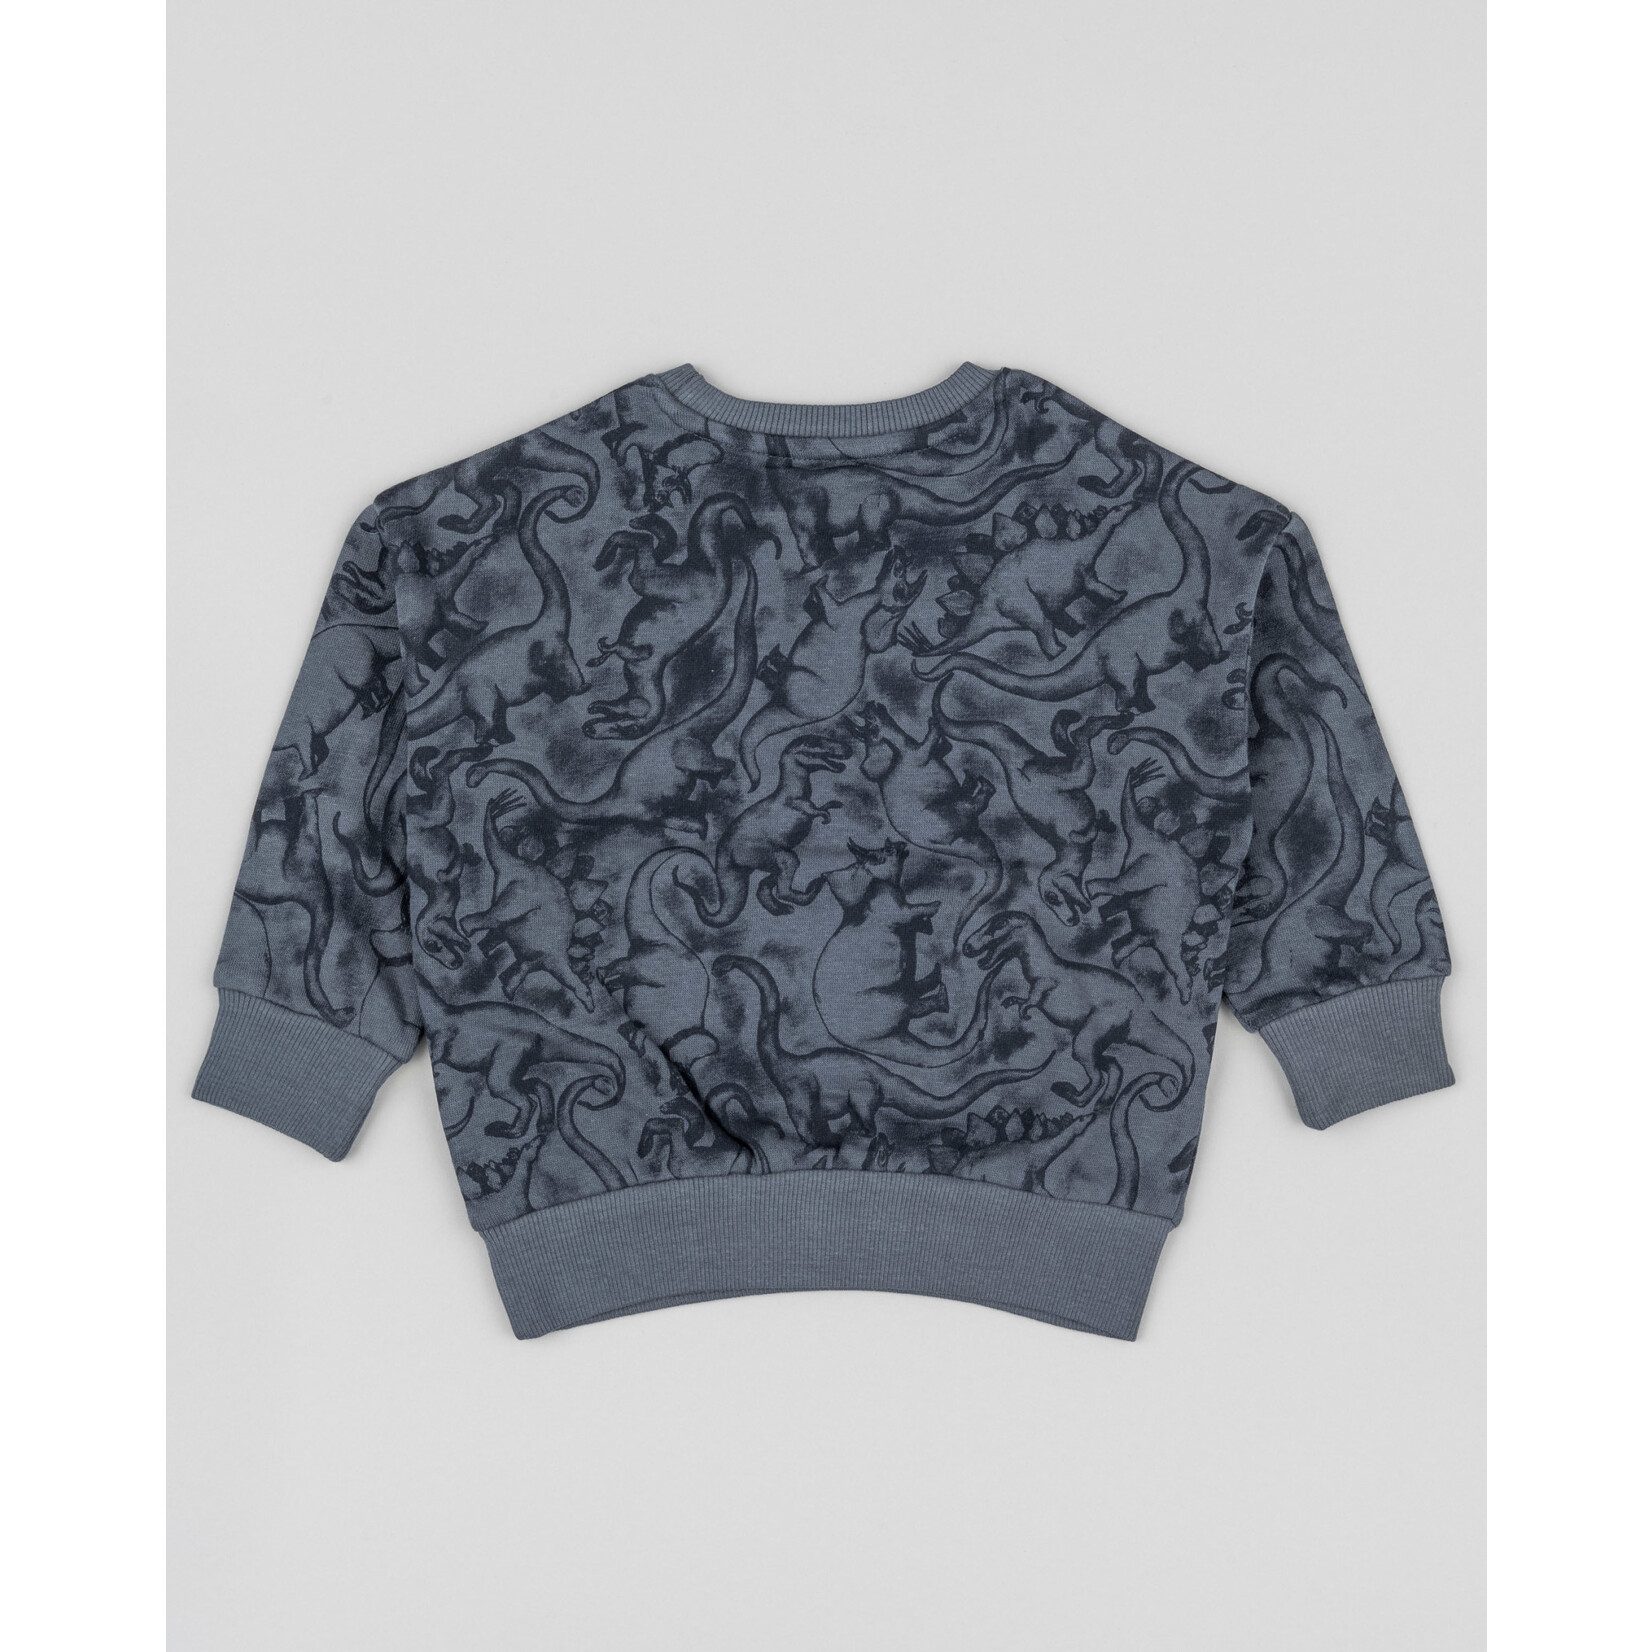 Losan LOSAN - Chandail coton ouaté gris foncé avec silhouettes de dinosaures